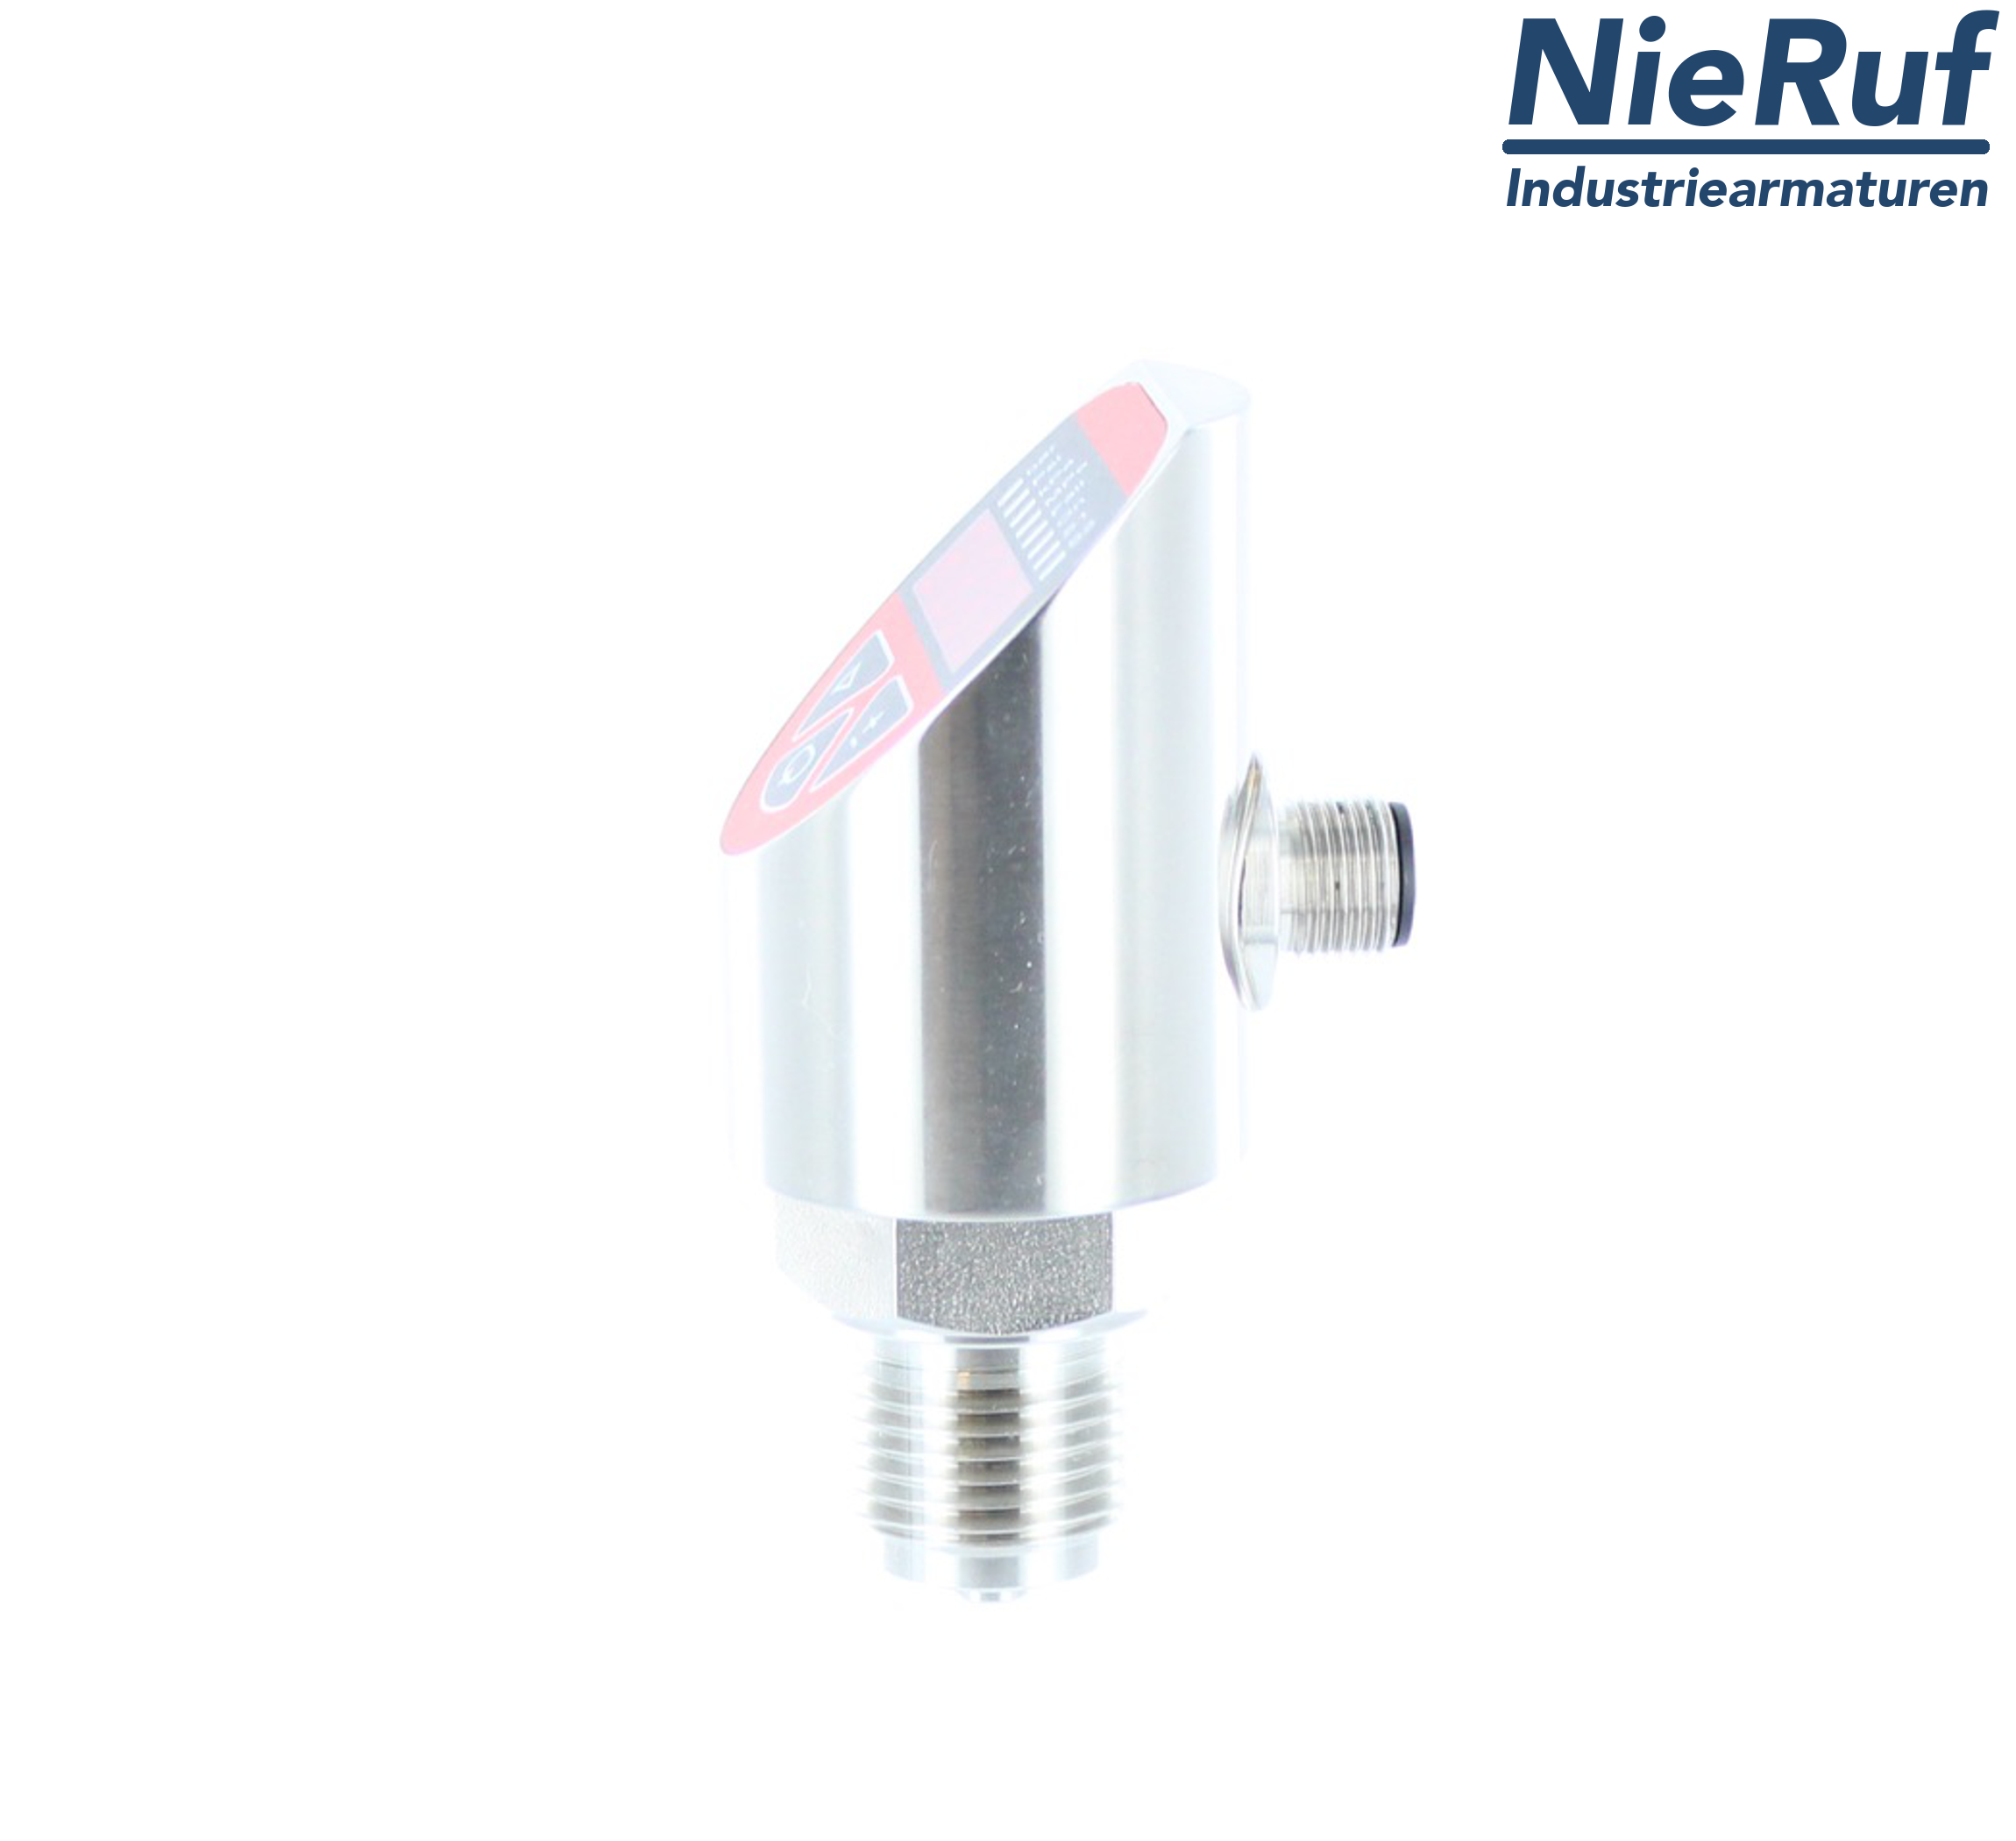 digital pressure sensor G 1/2" B 5-wire: 2xPNP, 1x4 - 20mA FPM 0,0 - 0,40 bar